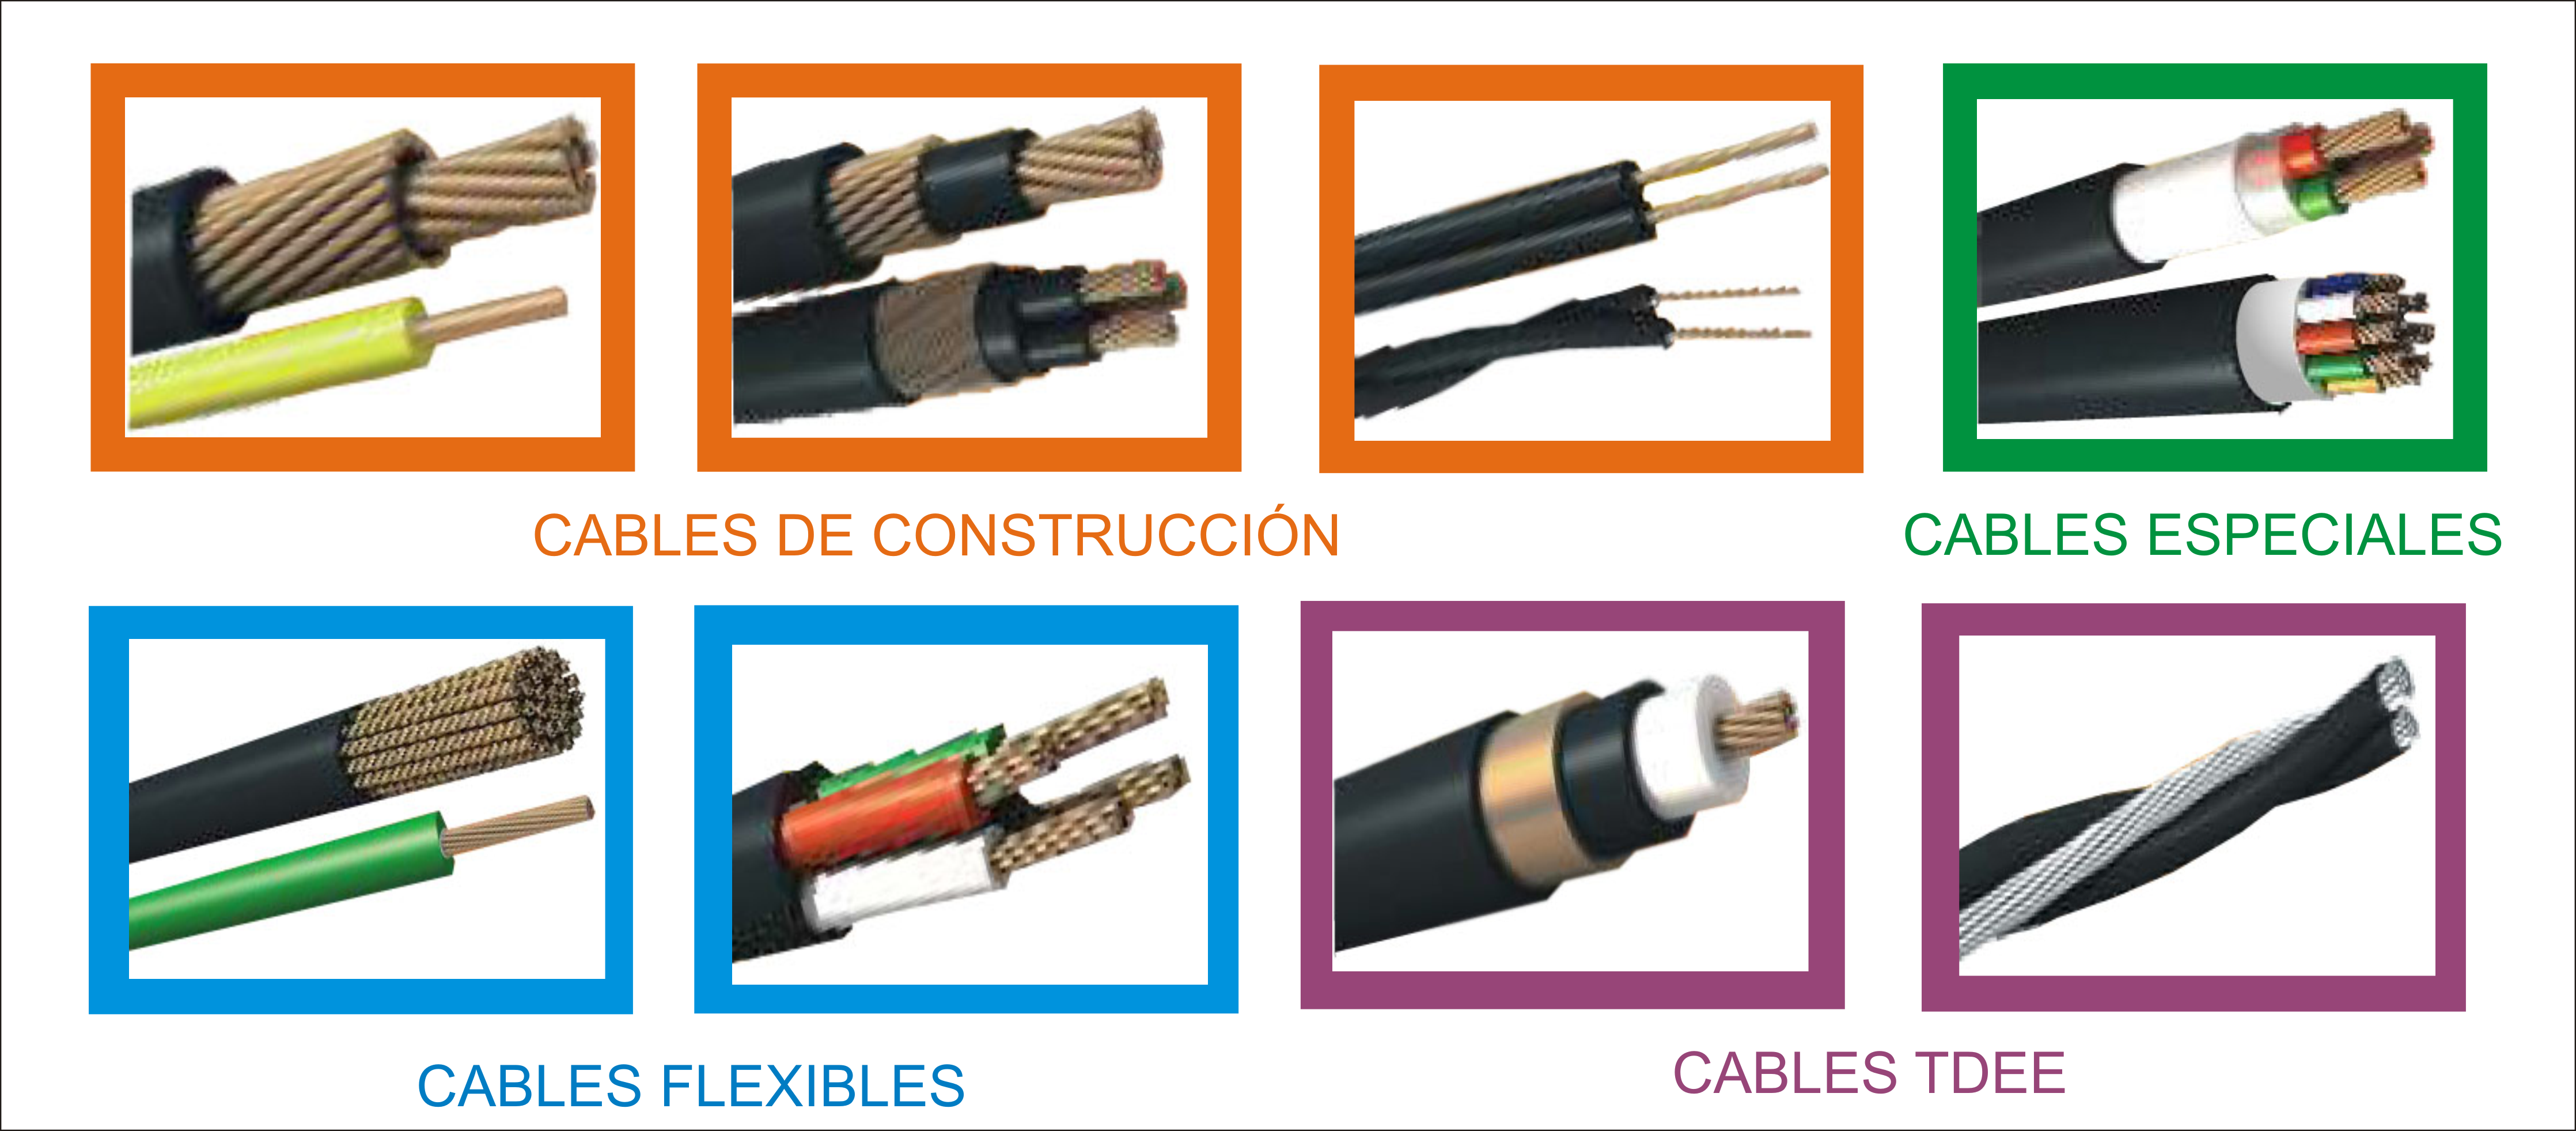 1. INTRODUCCIÓN 1.1. El problema de investigación En la fabricación de cables, empresas colombianas como Centelsa1, Procables2, Nexans3, entre otras, deben asegurar la calidad y el cumplimiento de